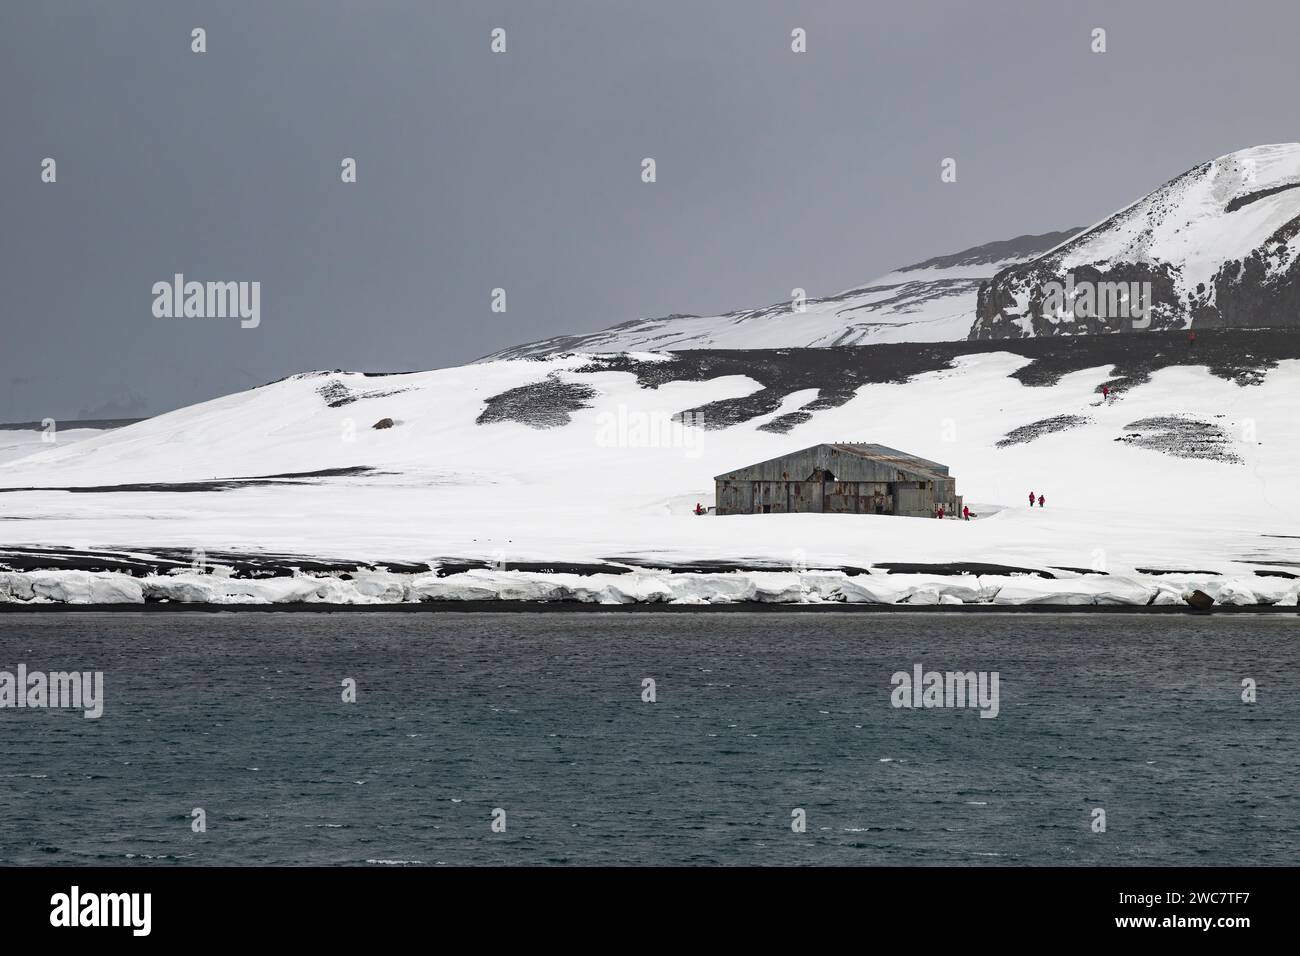 Isola dell'inganno, Isole Shetland meridionali, porto naturale sicuro, nella caldera di un vulcano attivo, rovine di una stazione di caccia alle balene, passaggio stretto Foto Stock